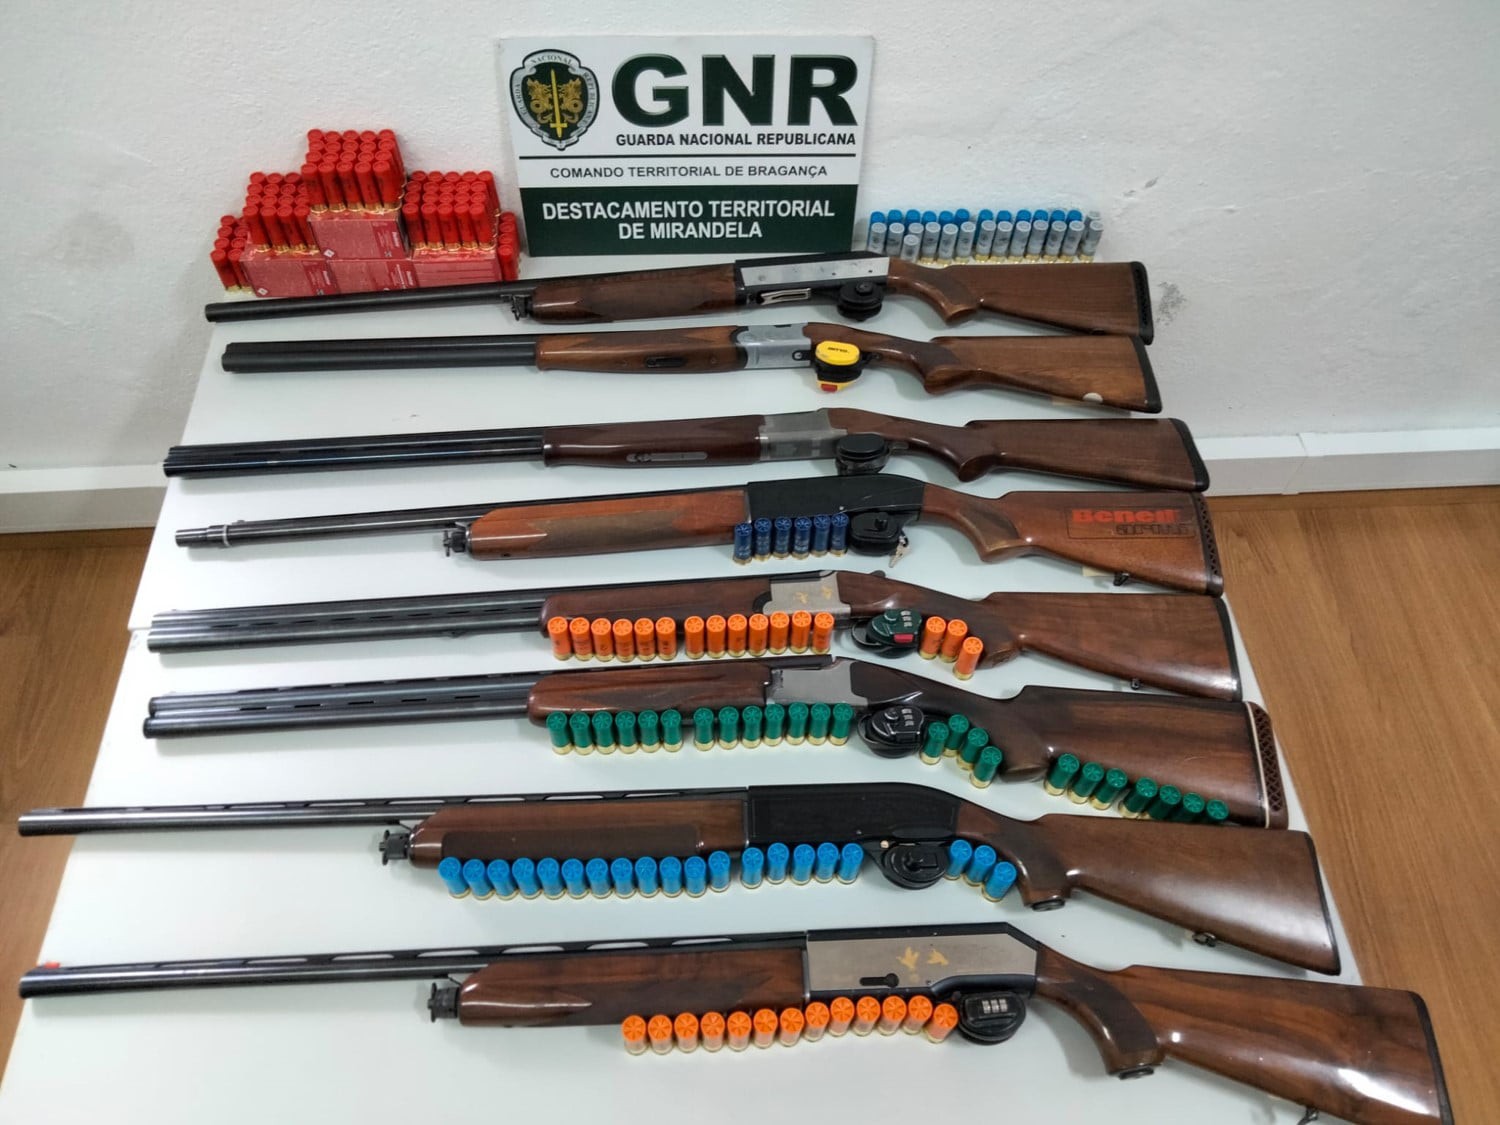 Nove detidos por caça ilegal em Mirandela